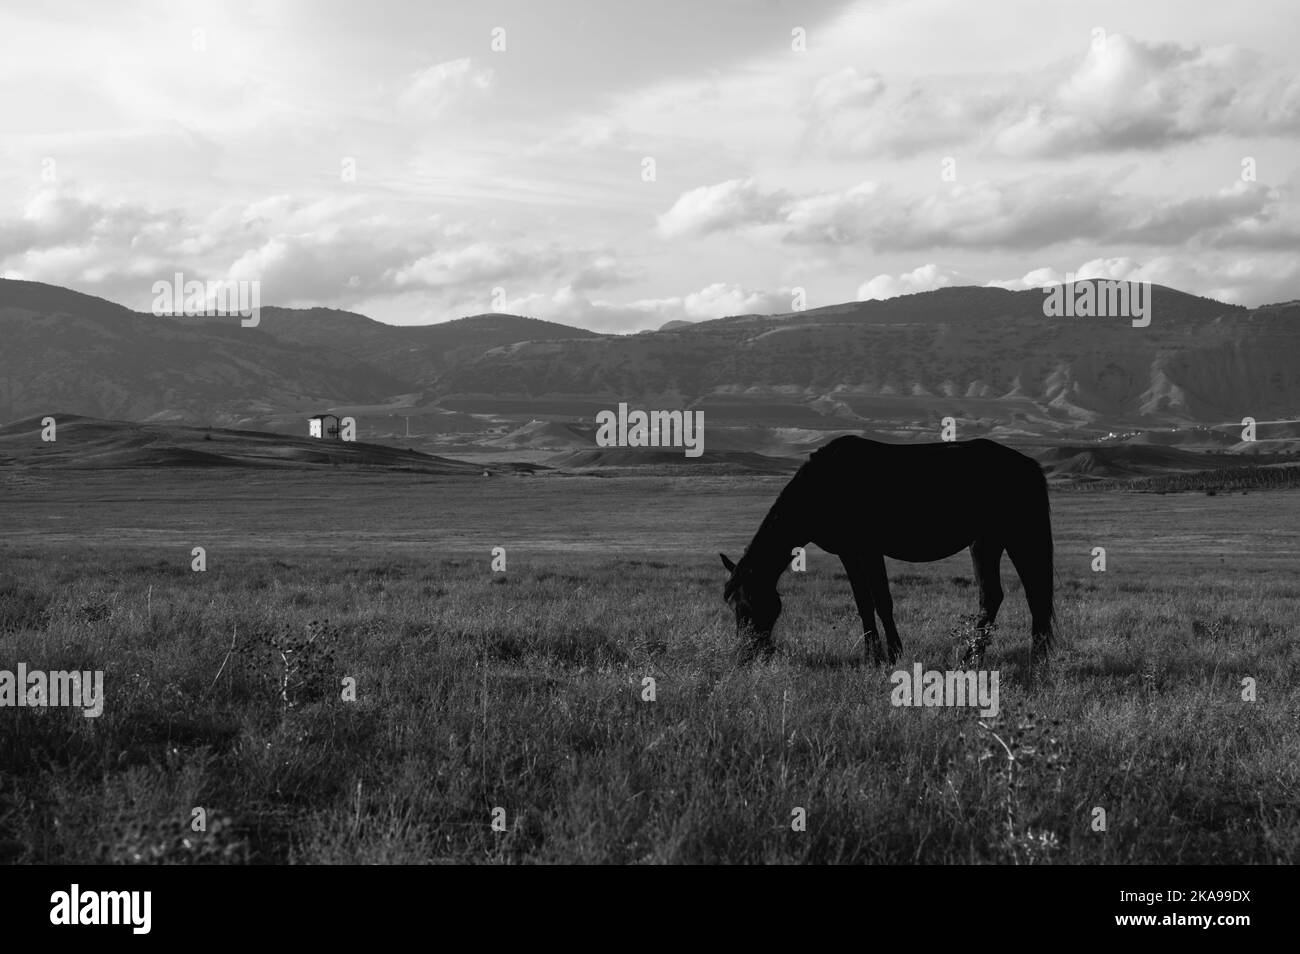 Des chevaux sauvages se broutent sur le terrain. Ciel nuageux et montagnes en arrière-plan. De beaux animaux. Noir et blanc. Banque D'Images